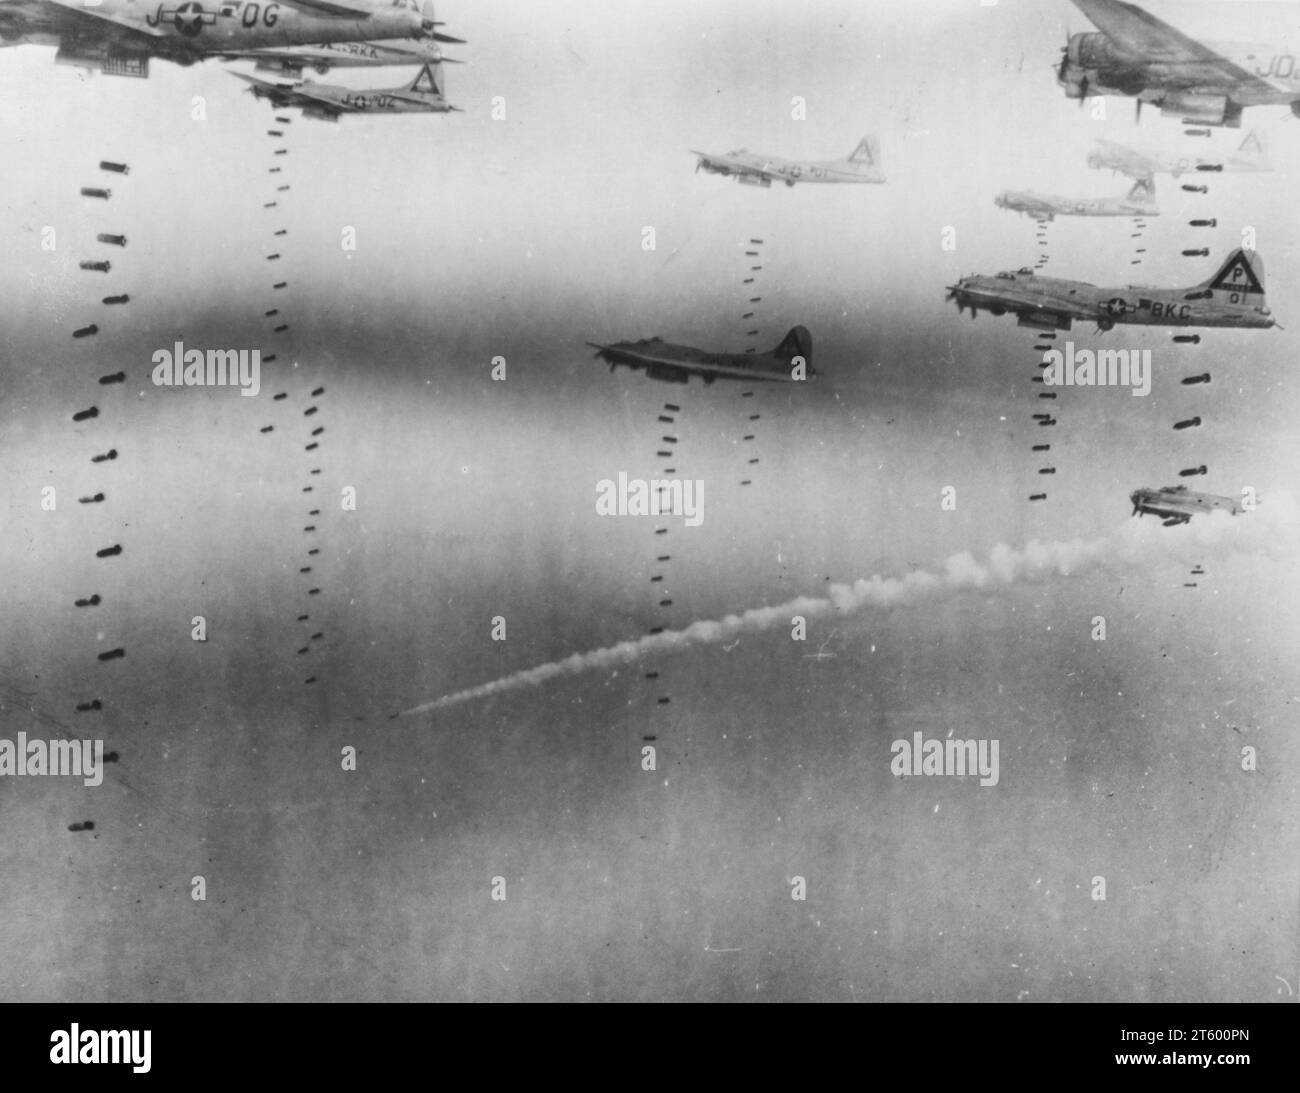 Le bombe piovono sulla German Escape Route - concentrandosi sul bombardamento di tre centri ferroviari nell'area di Dresda, punti d'arresto per i tedeschi diretti a sud-est nelle montagne, il Boeing B-17 Flying Fortresses of Us 8th AF il 17 aprile 1945 ha fatto esplodere il bersaglio Foto Stock